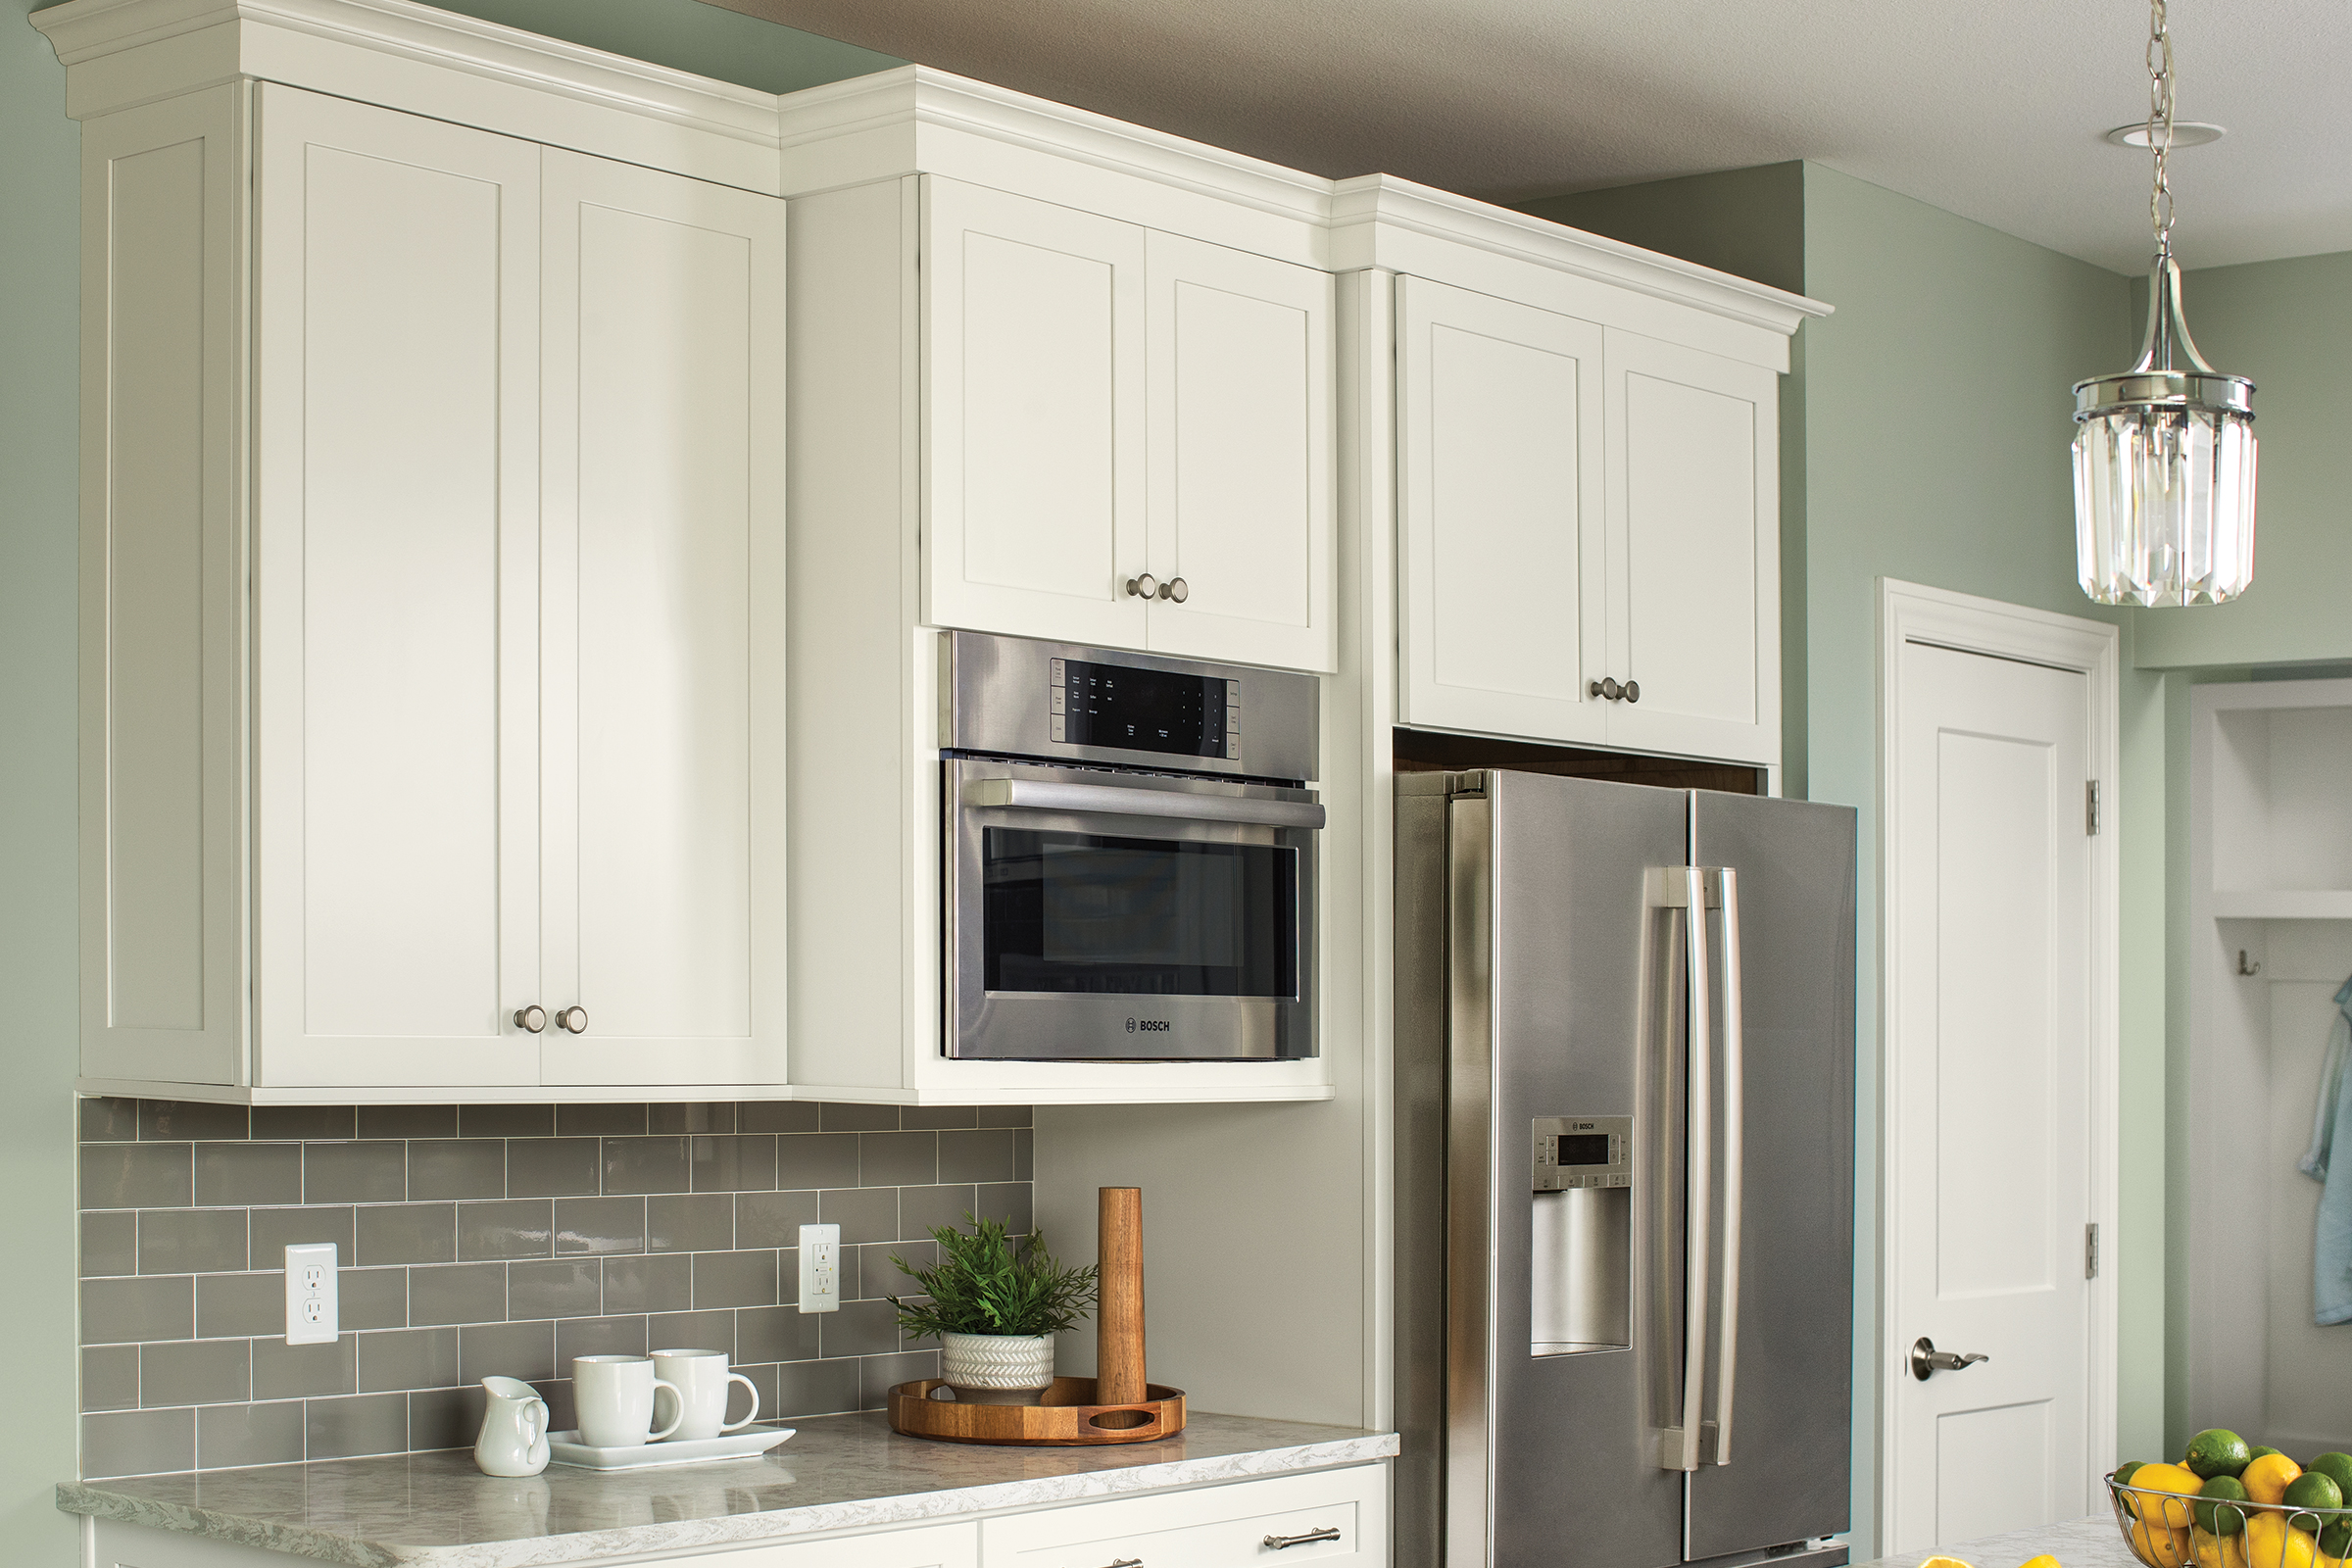 Stylish And Useful Wholesale whole kitchen cabinet set In Many Sizes 